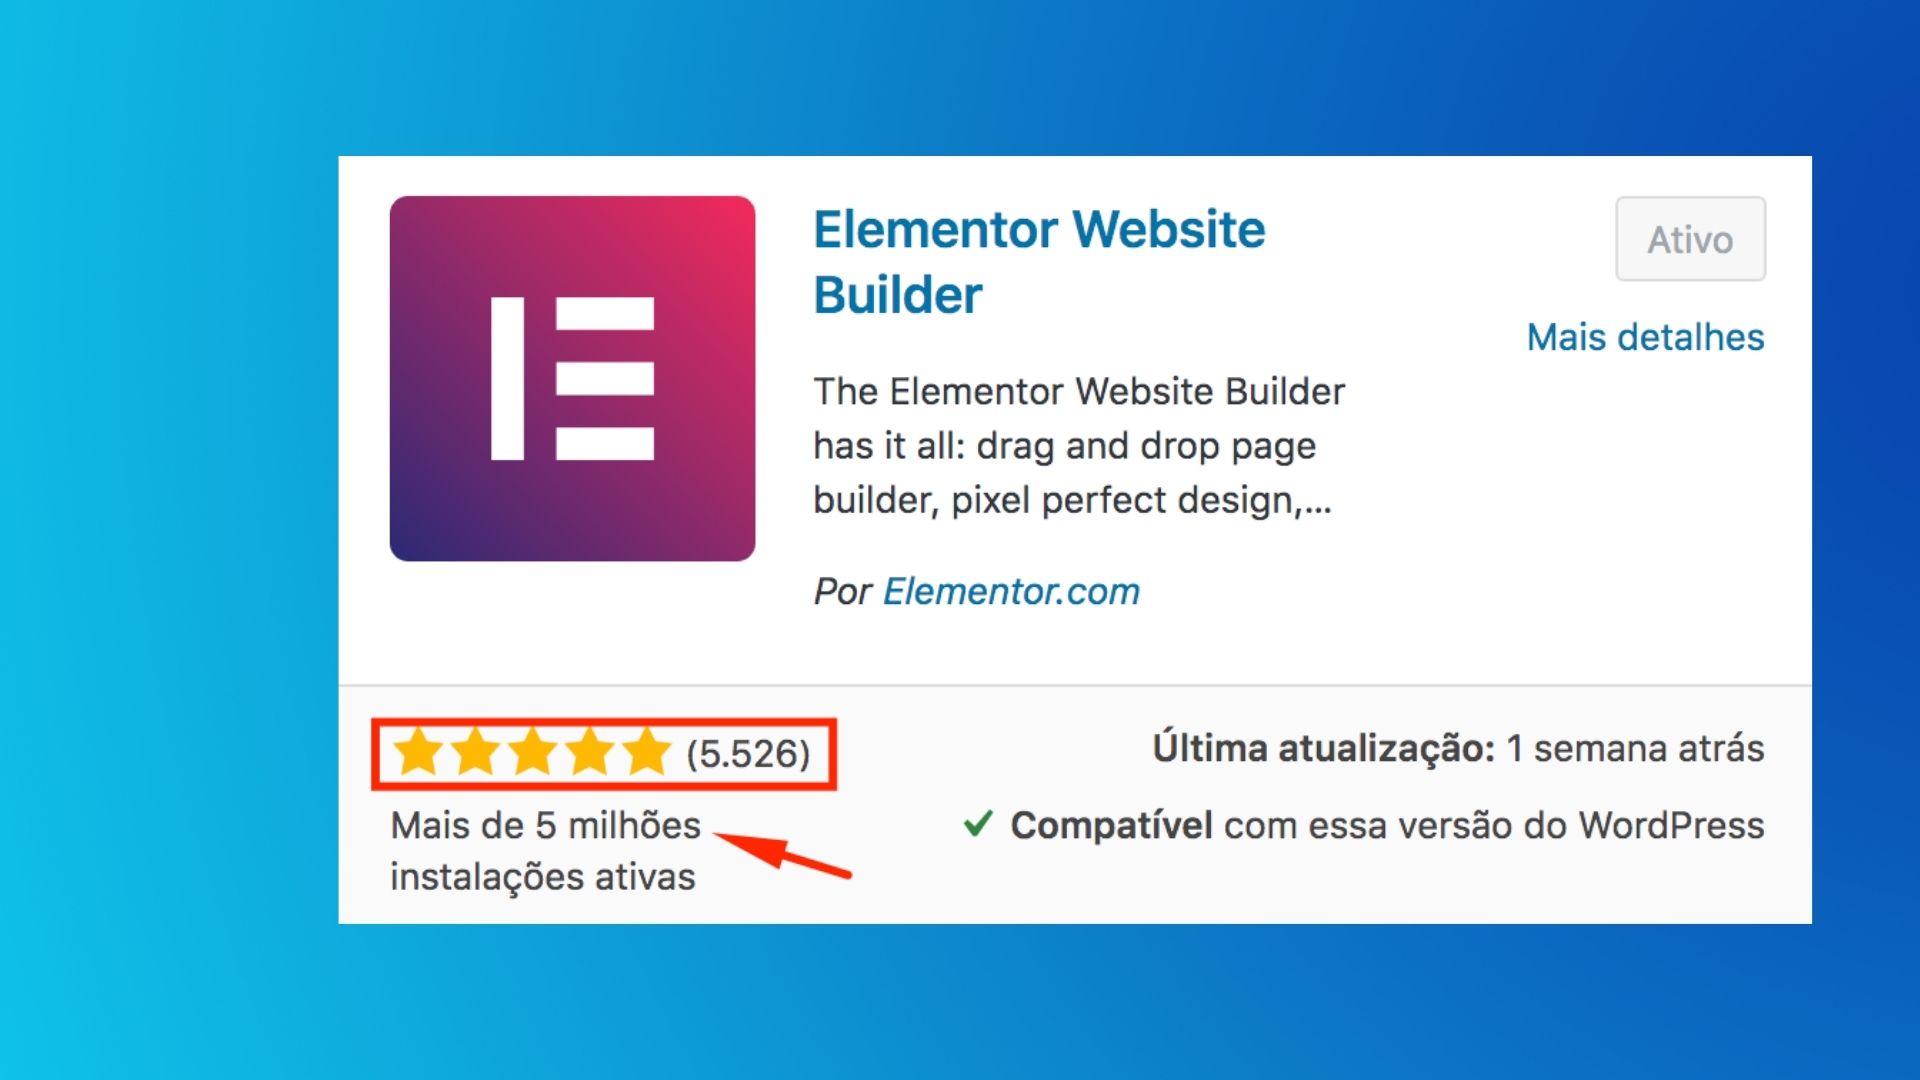 Elementor Blog 2 1 - Elementor: Avaliação do Construtor de Websites mais usado no momento